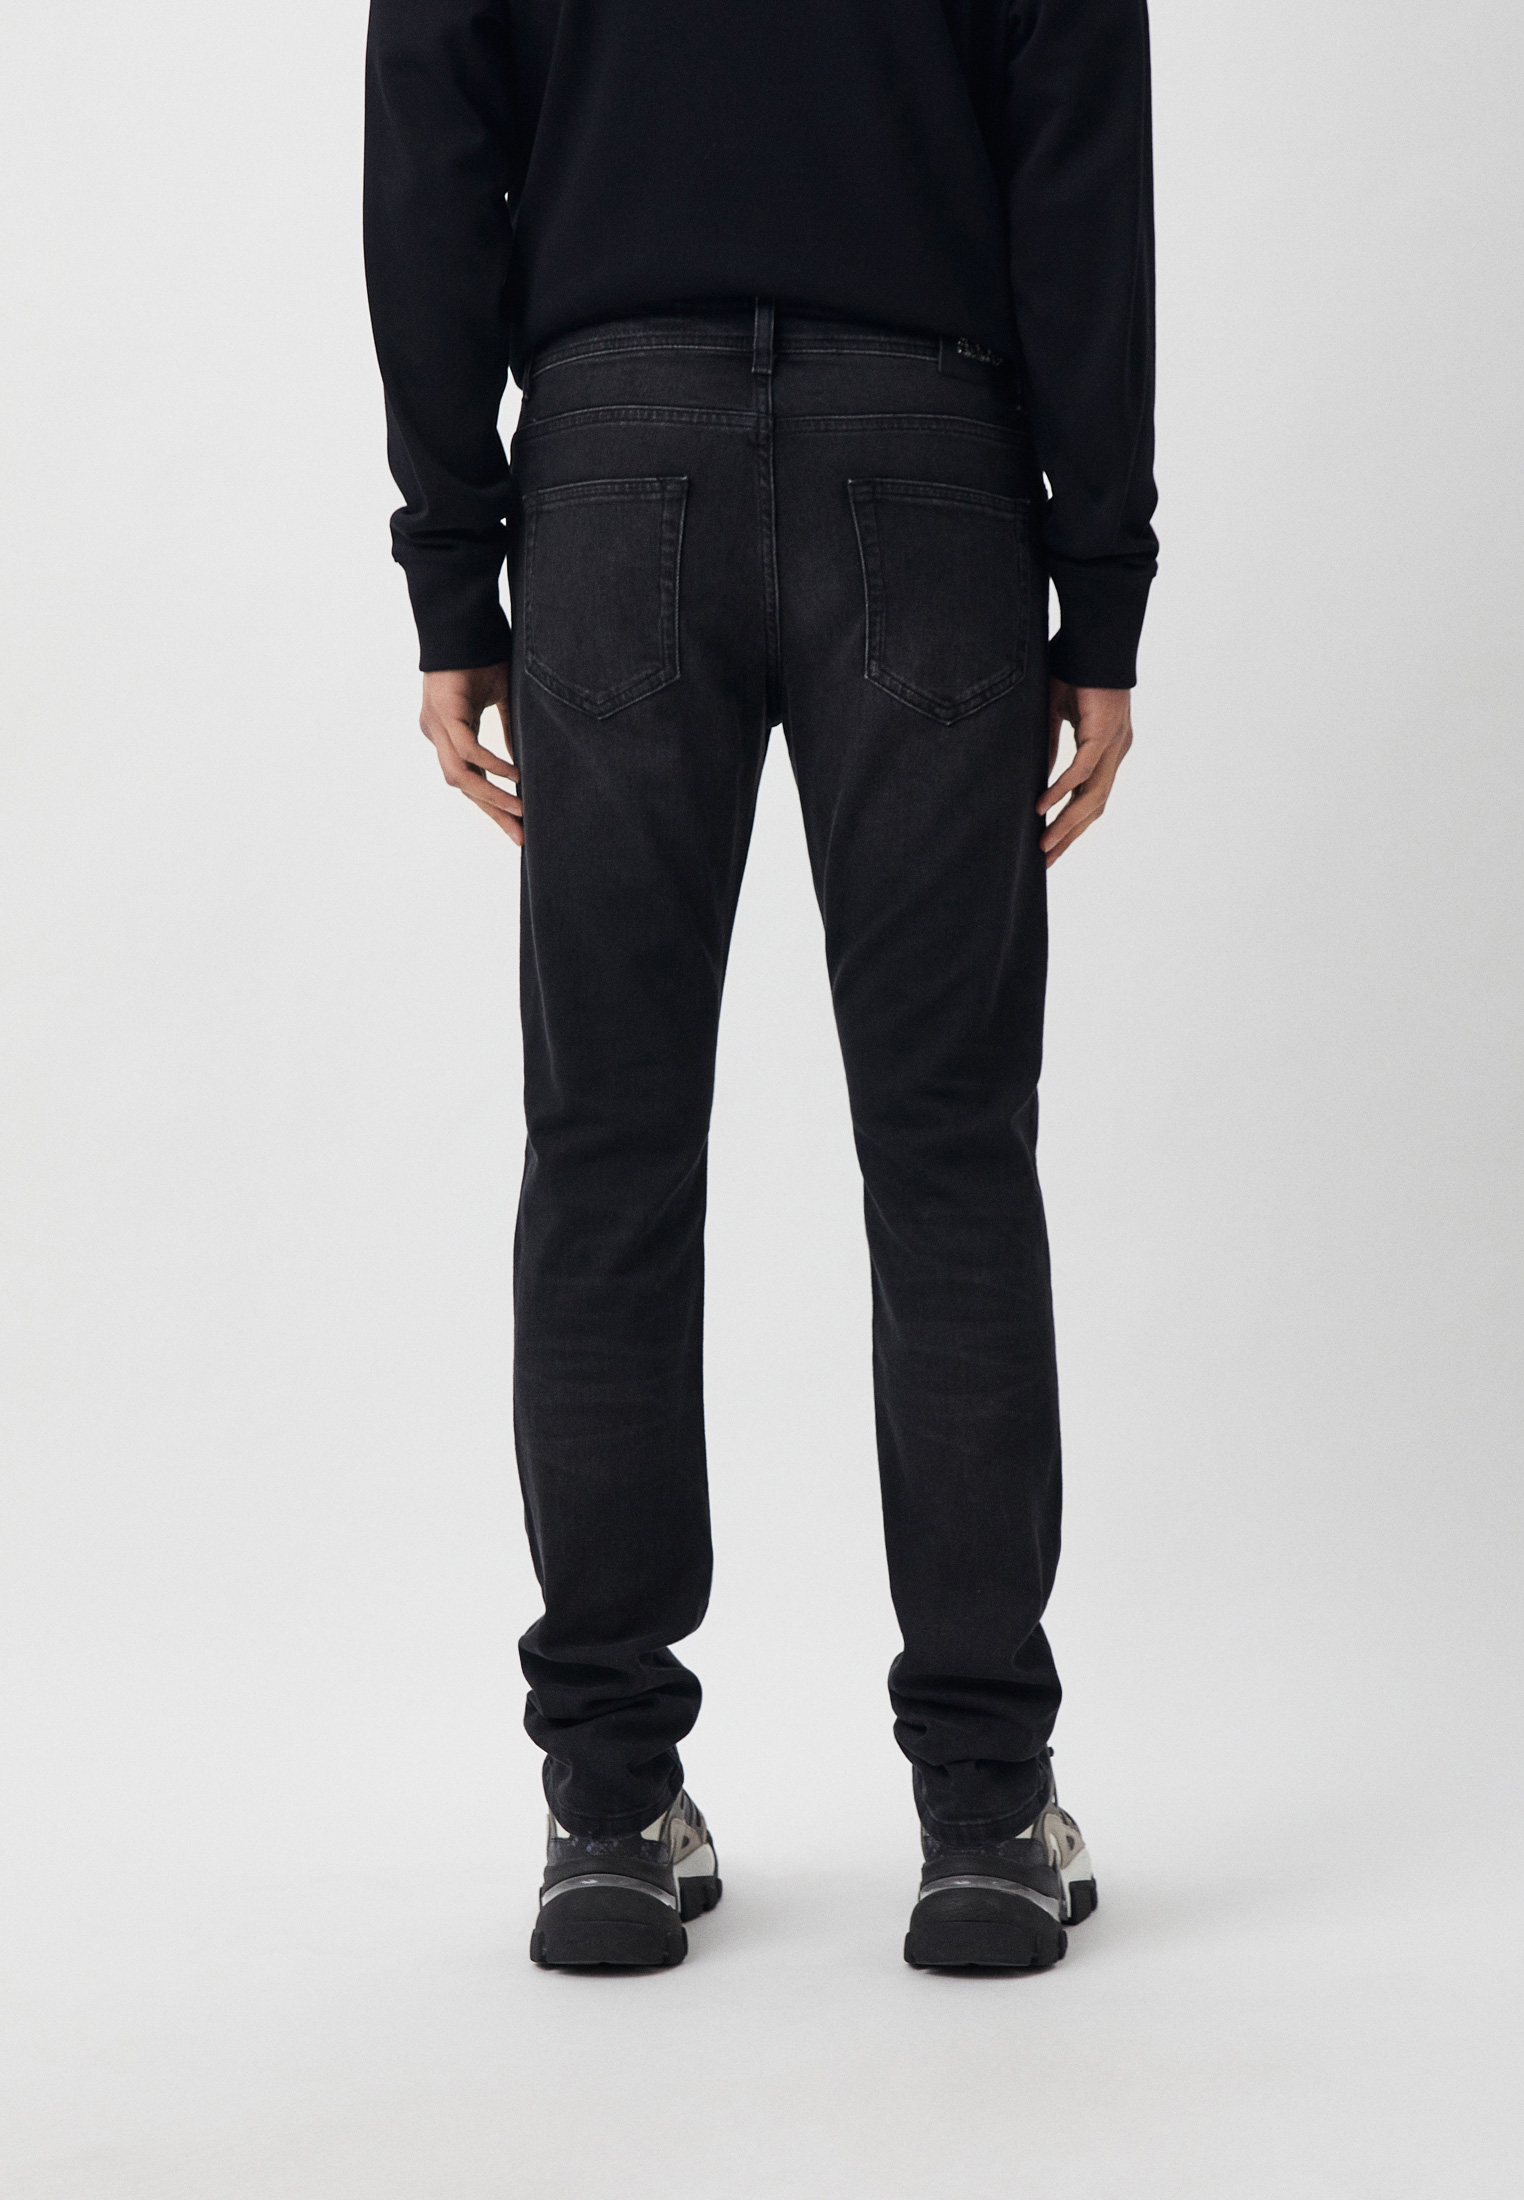 Мужские прямые джинсы Karl Lagerfeld (Карл Лагерфельд) 265840-500899: изображение 6